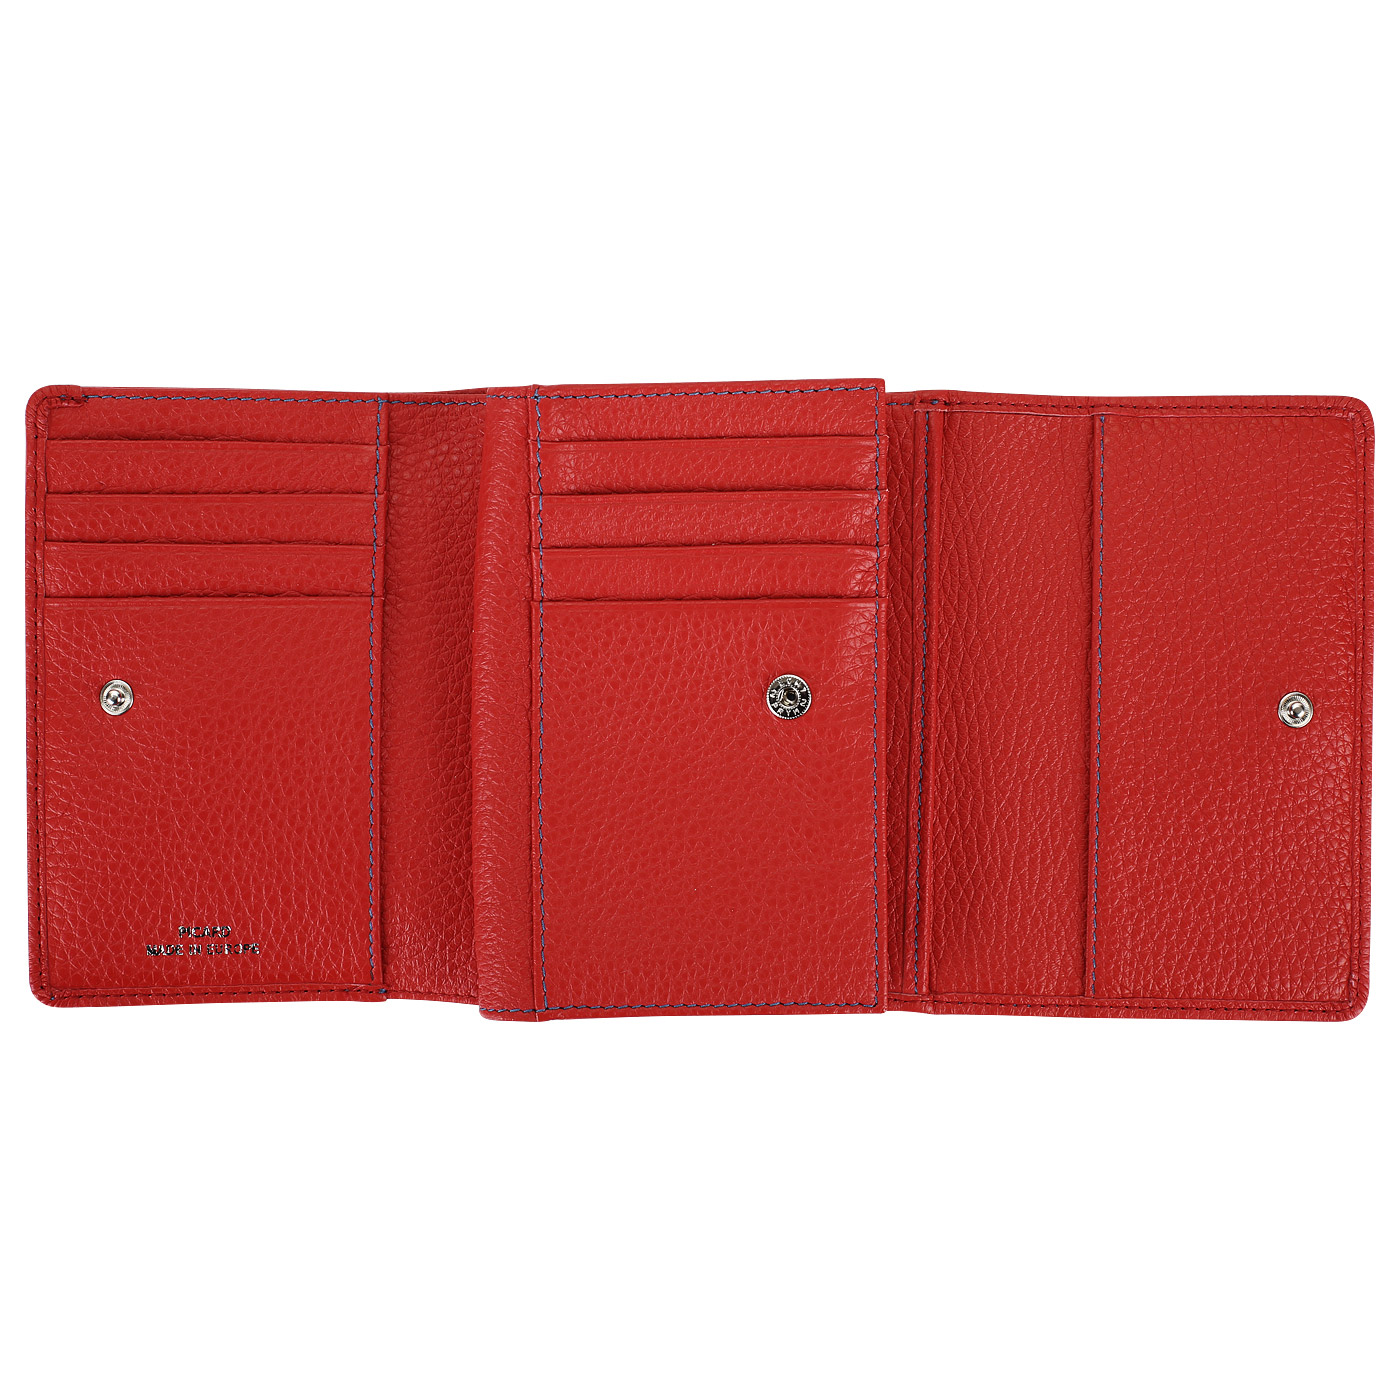 Красный складной кошелек Picard Dakota 1